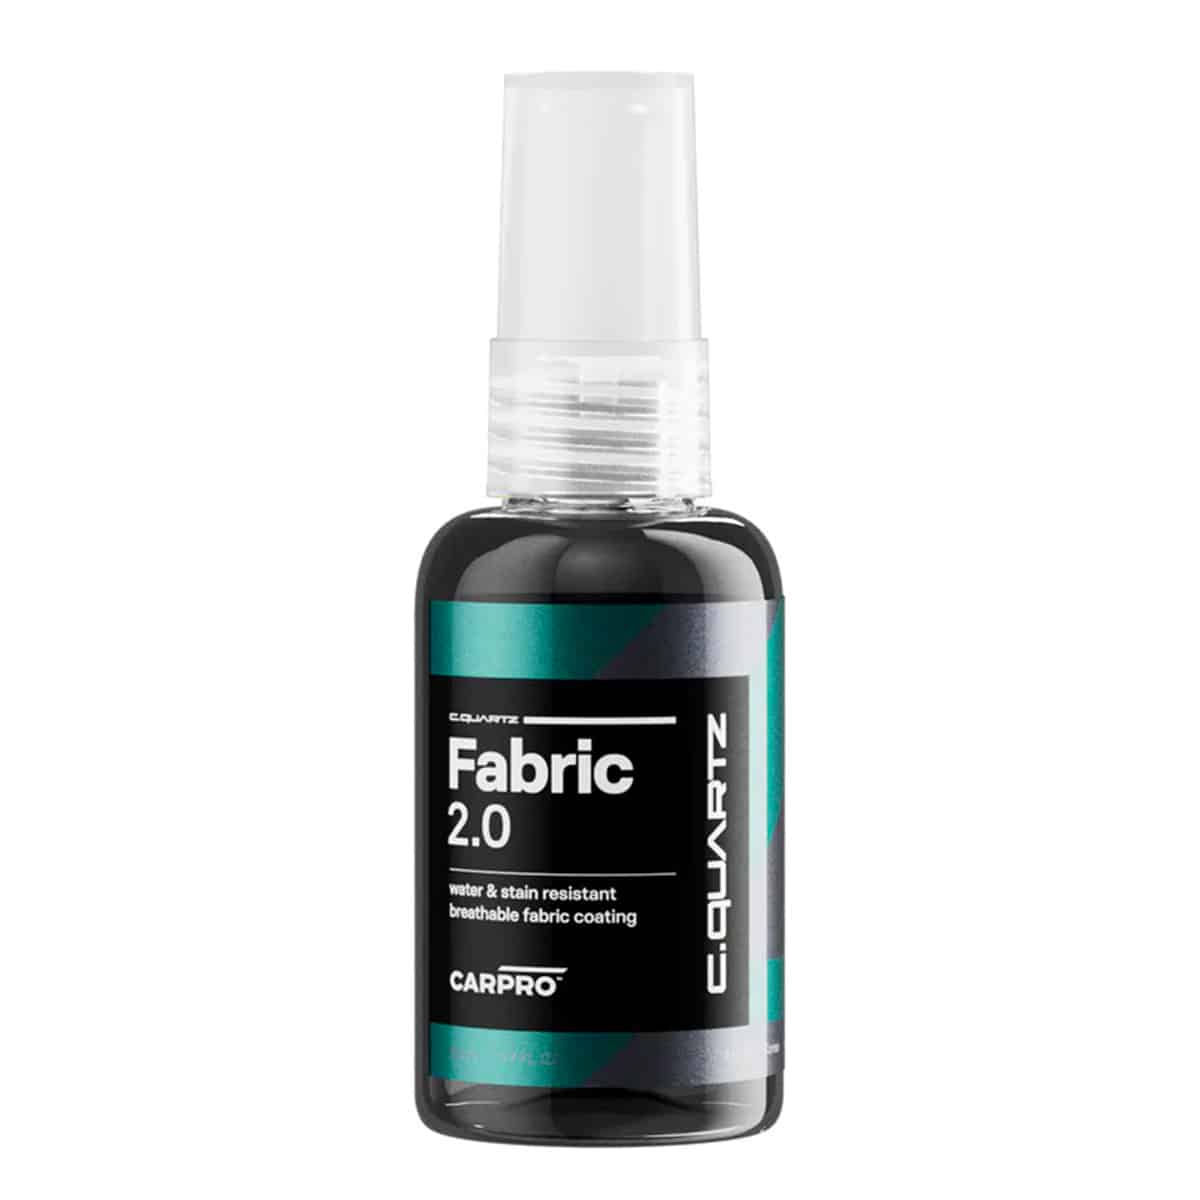 Carpro Fabric 2.0 - Sigillante Impermeabilizzante per Tessuti 50ml